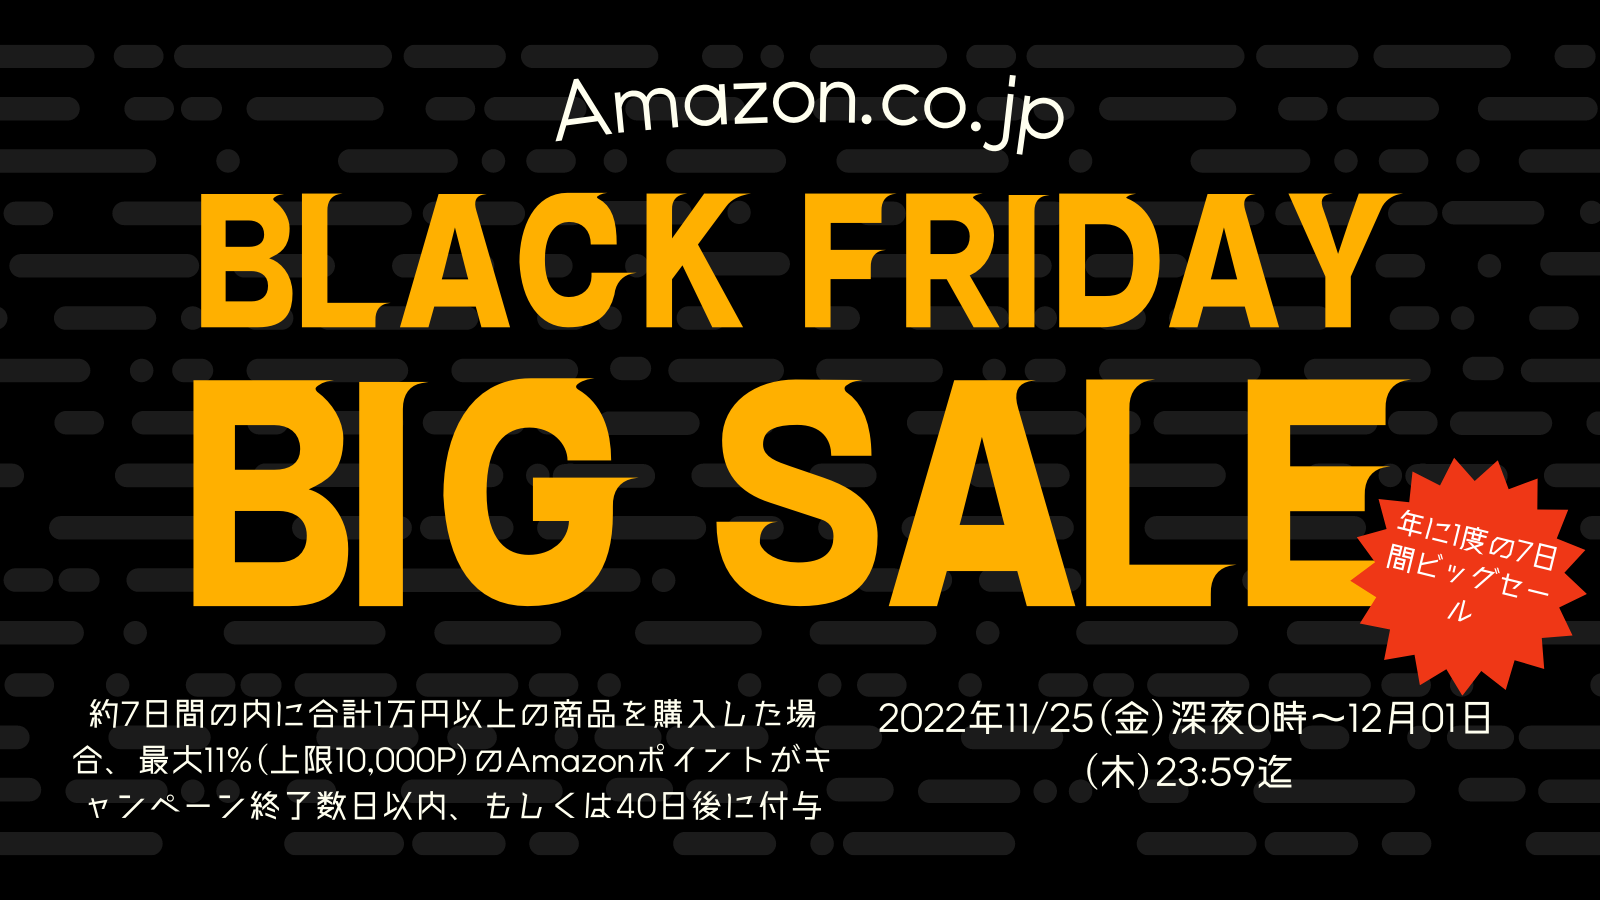 Amazonにて2022年実施分の「ブラックフライデー」を11月25日(金)深夜0時から約7日間開催 #Amazon #アマゾン #セール #特価 #タイムセール #ブラックフライデー #BlackFriday